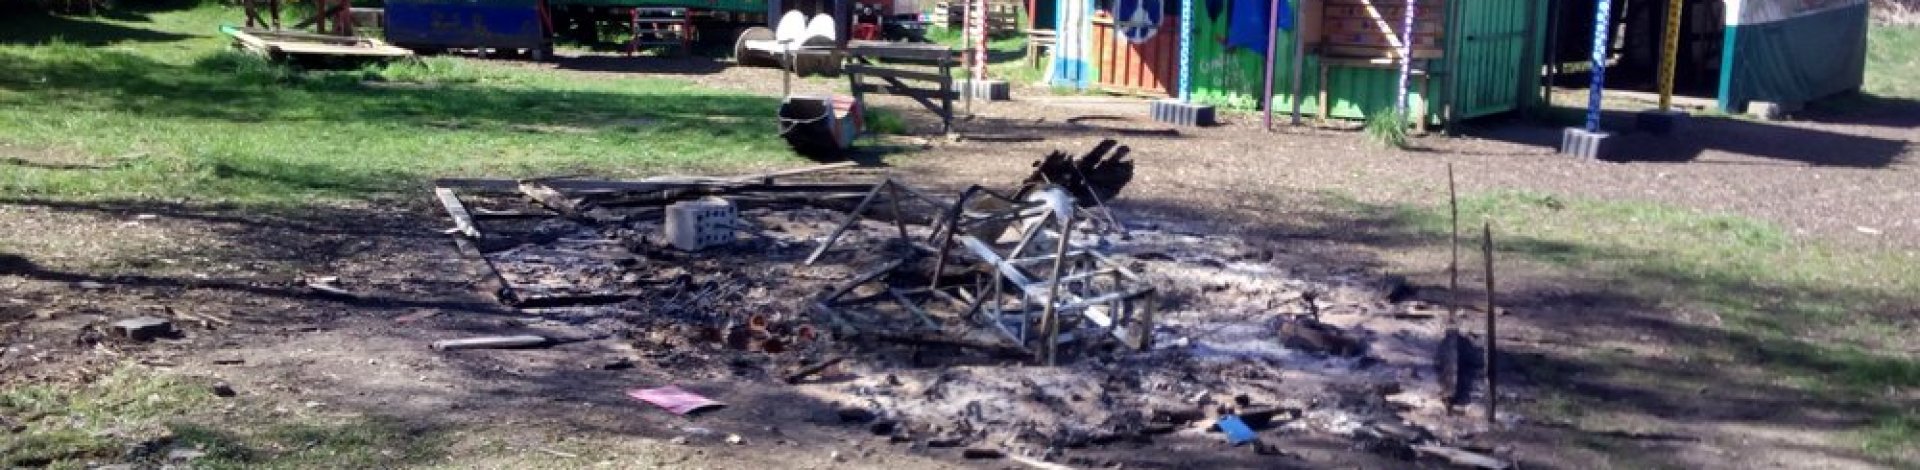 Der RaBauKi – Abenteuerspielplatz ist gefährdet durch massiven Vandalismus…